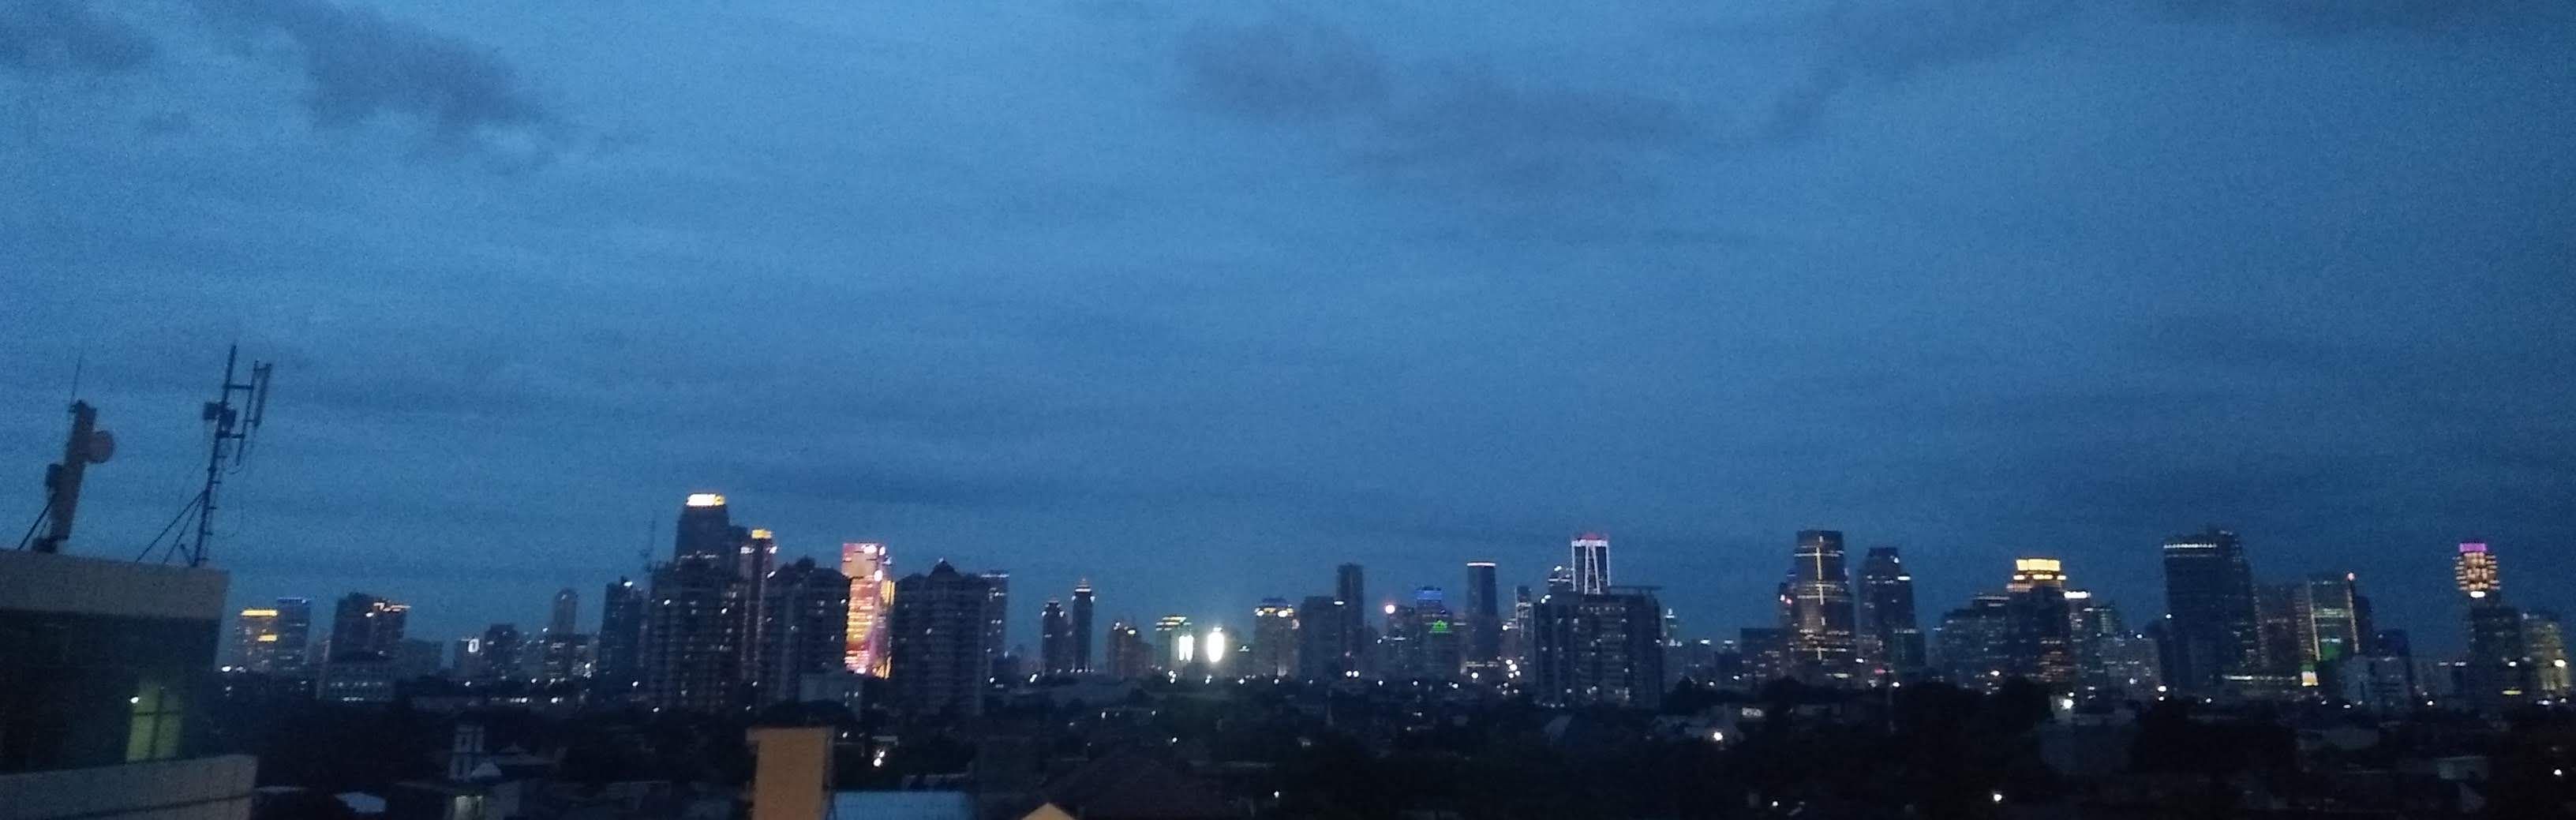 Suasana kota Jakarta di lihat dari lantai 7 hotel Liberta